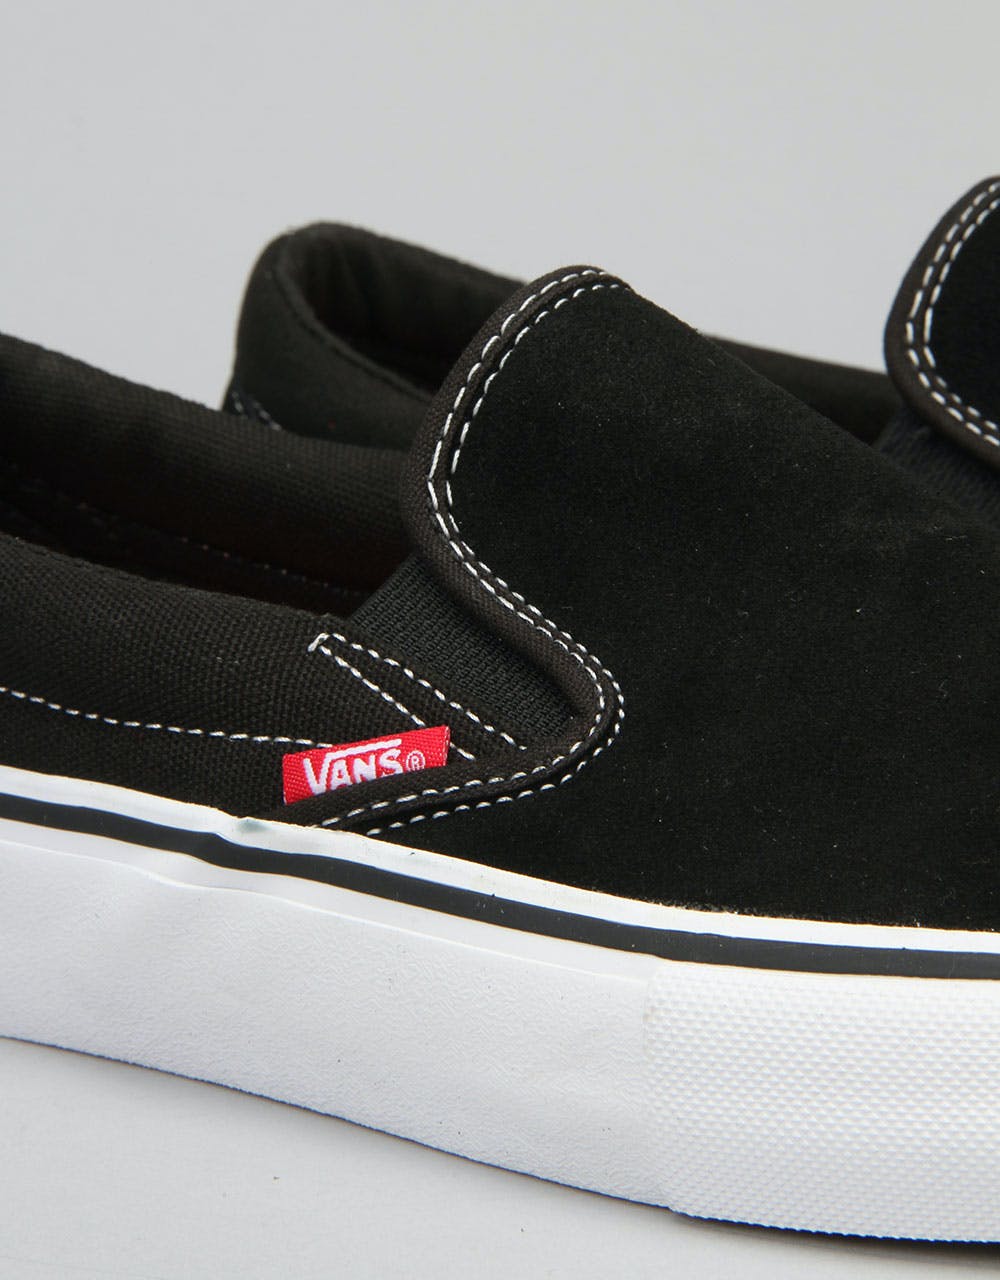 Vans Slip On Pro Skate Shoes - Black/White/Gum